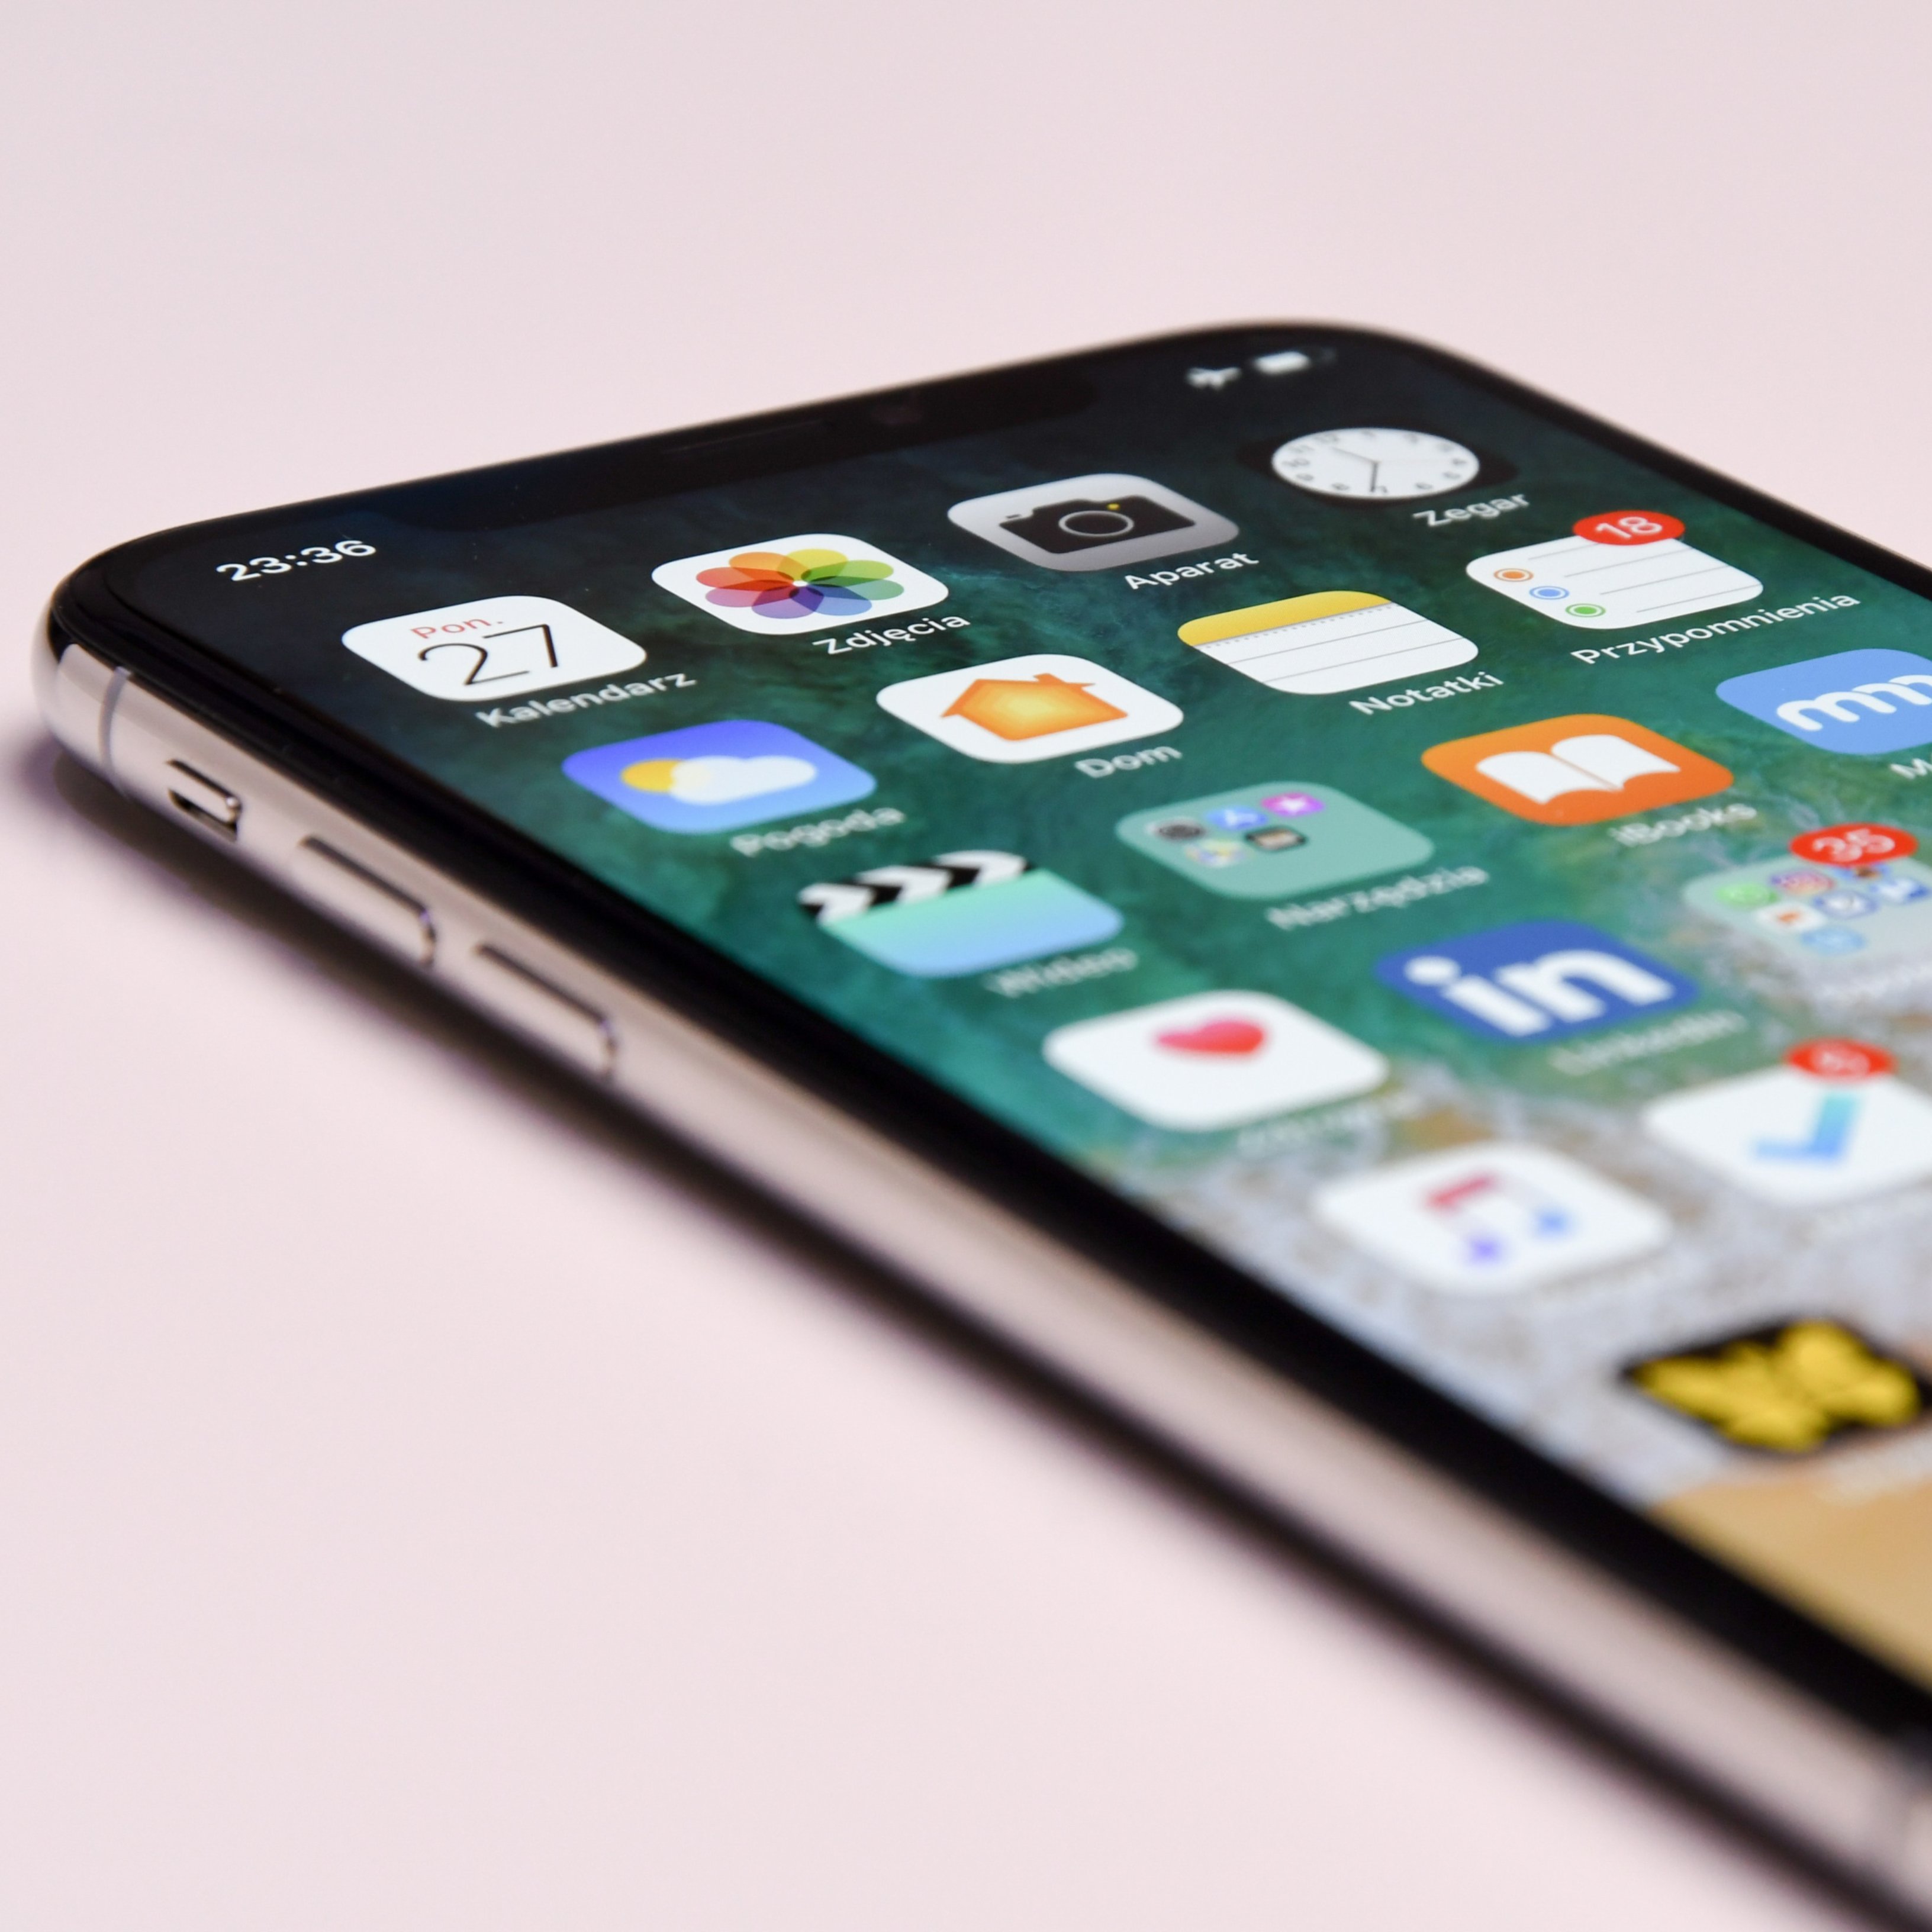 Set consells perquè la bateria del teu iPhone trigui més a gastar-se